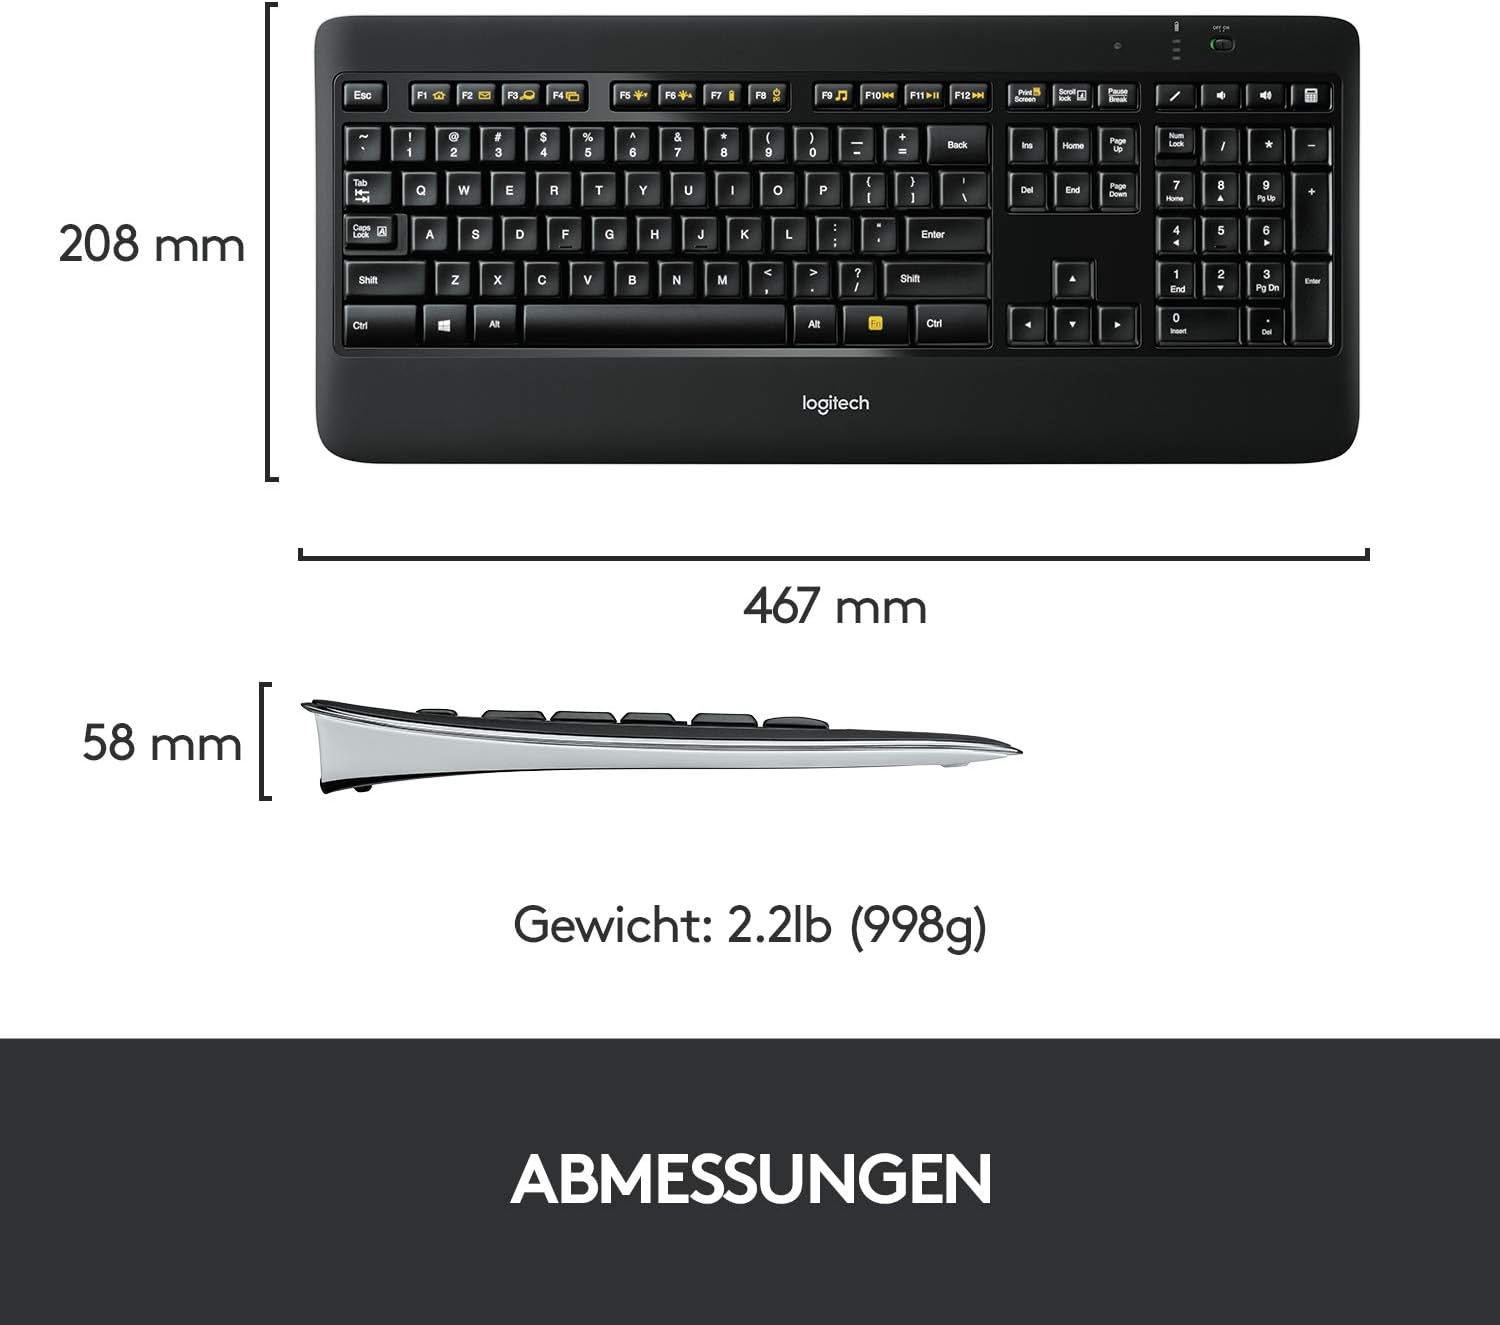 Logitech Wireless Illuminated Keyboard K800 - Kabellose QWERTZ (DE) Tastatur mit Hintergrundbeleuchteten Tasten